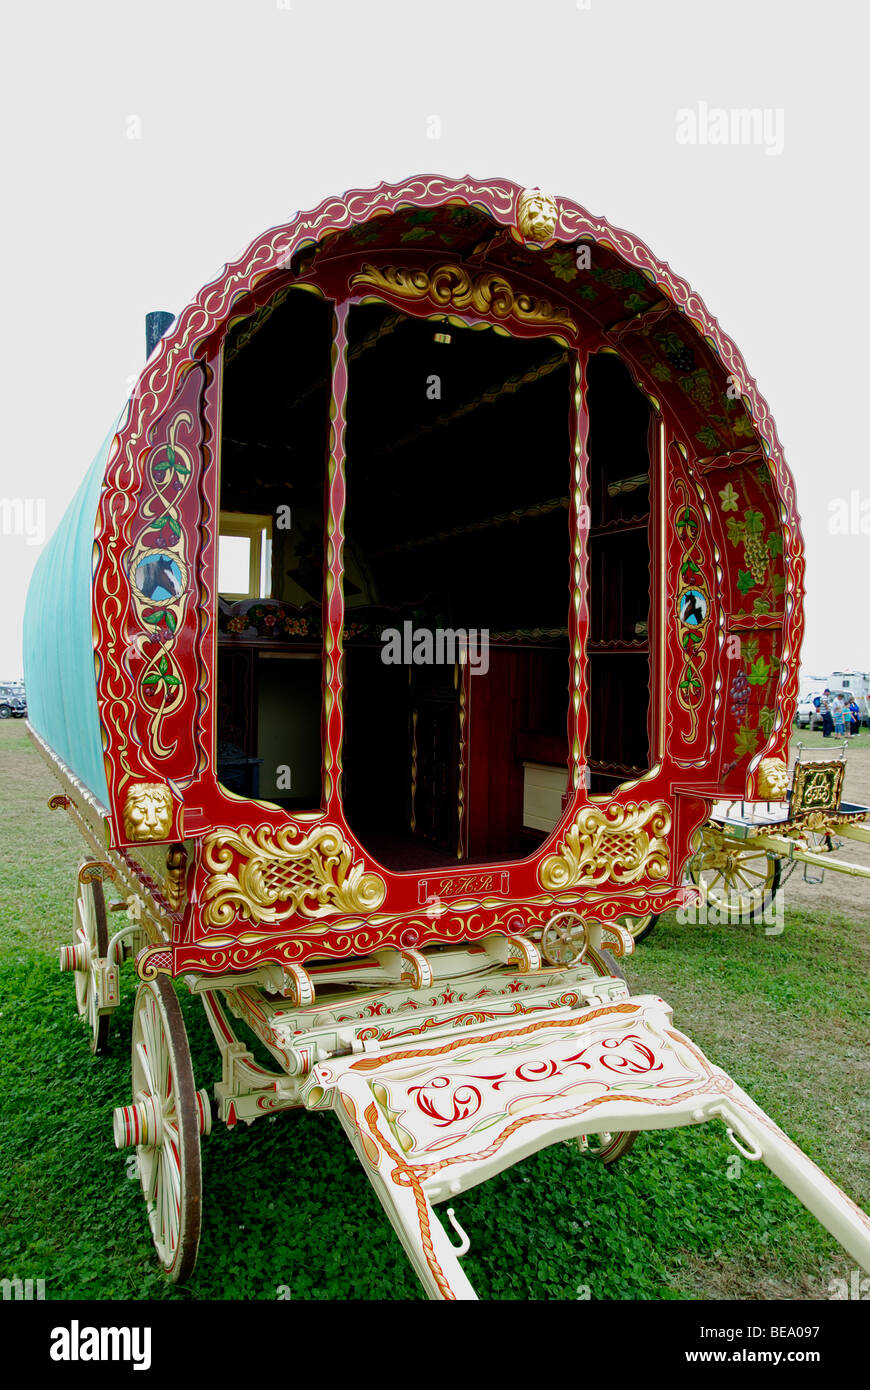 eine traditionell eingerichtete Zigeunerwagen auf einem Rummelplatz in Cornwall, Großbritannien Stockfoto